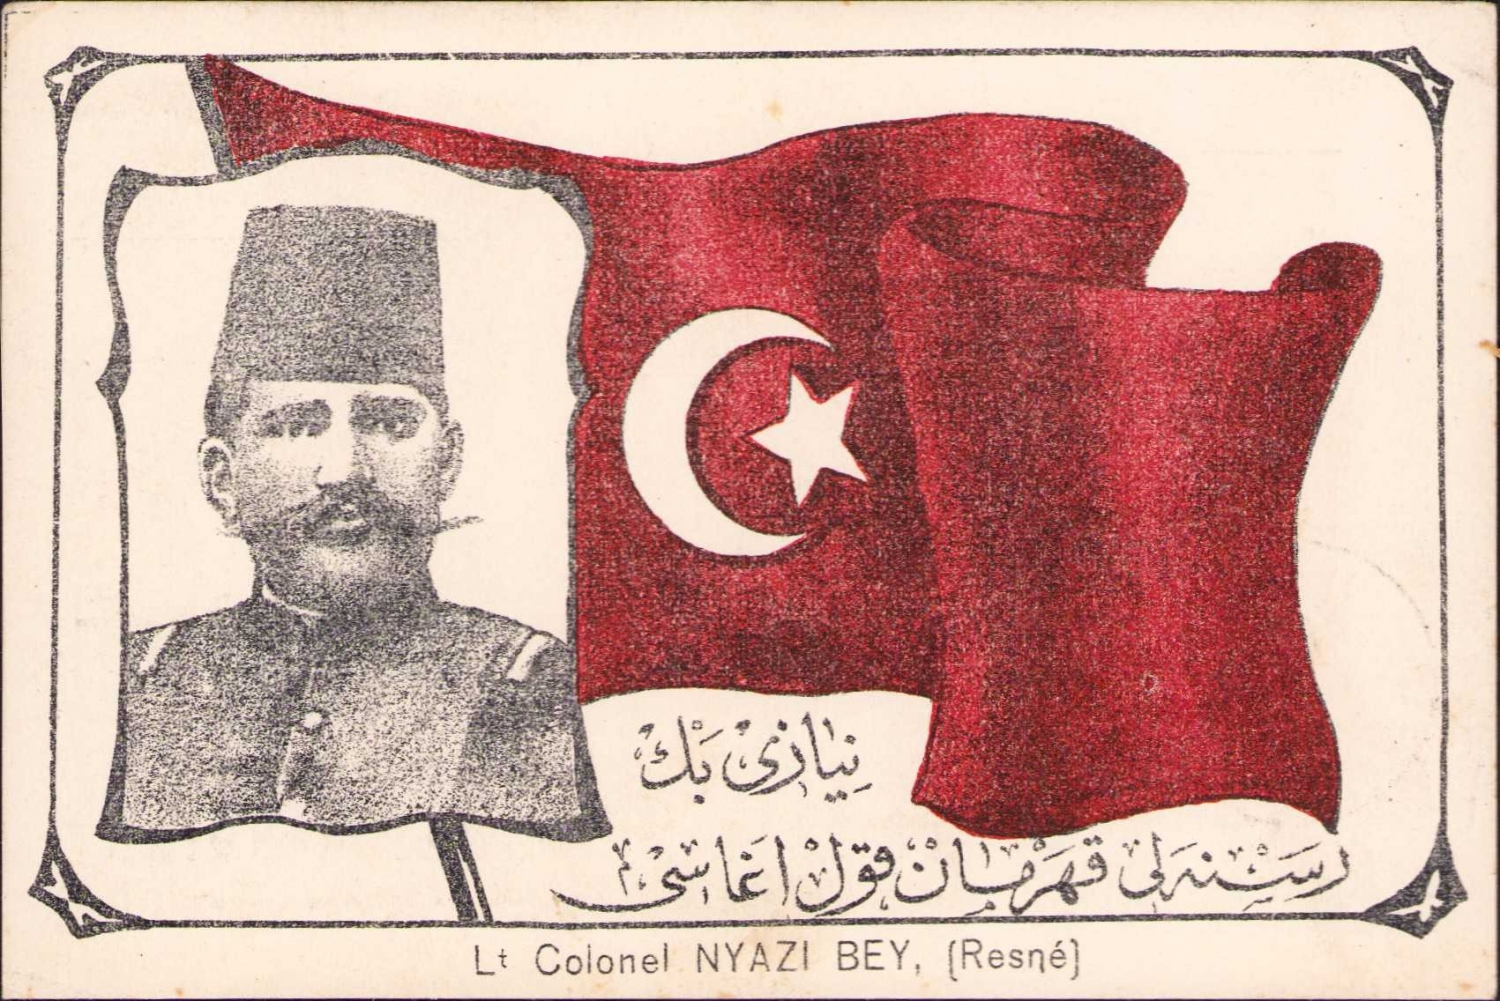 Osmanlı kartpostal,Osmanlıca "Resneli kahraman Kolağası Niyazi Bey" yazmakta - Resneli kahraman Kolagasi Niyazi Bey